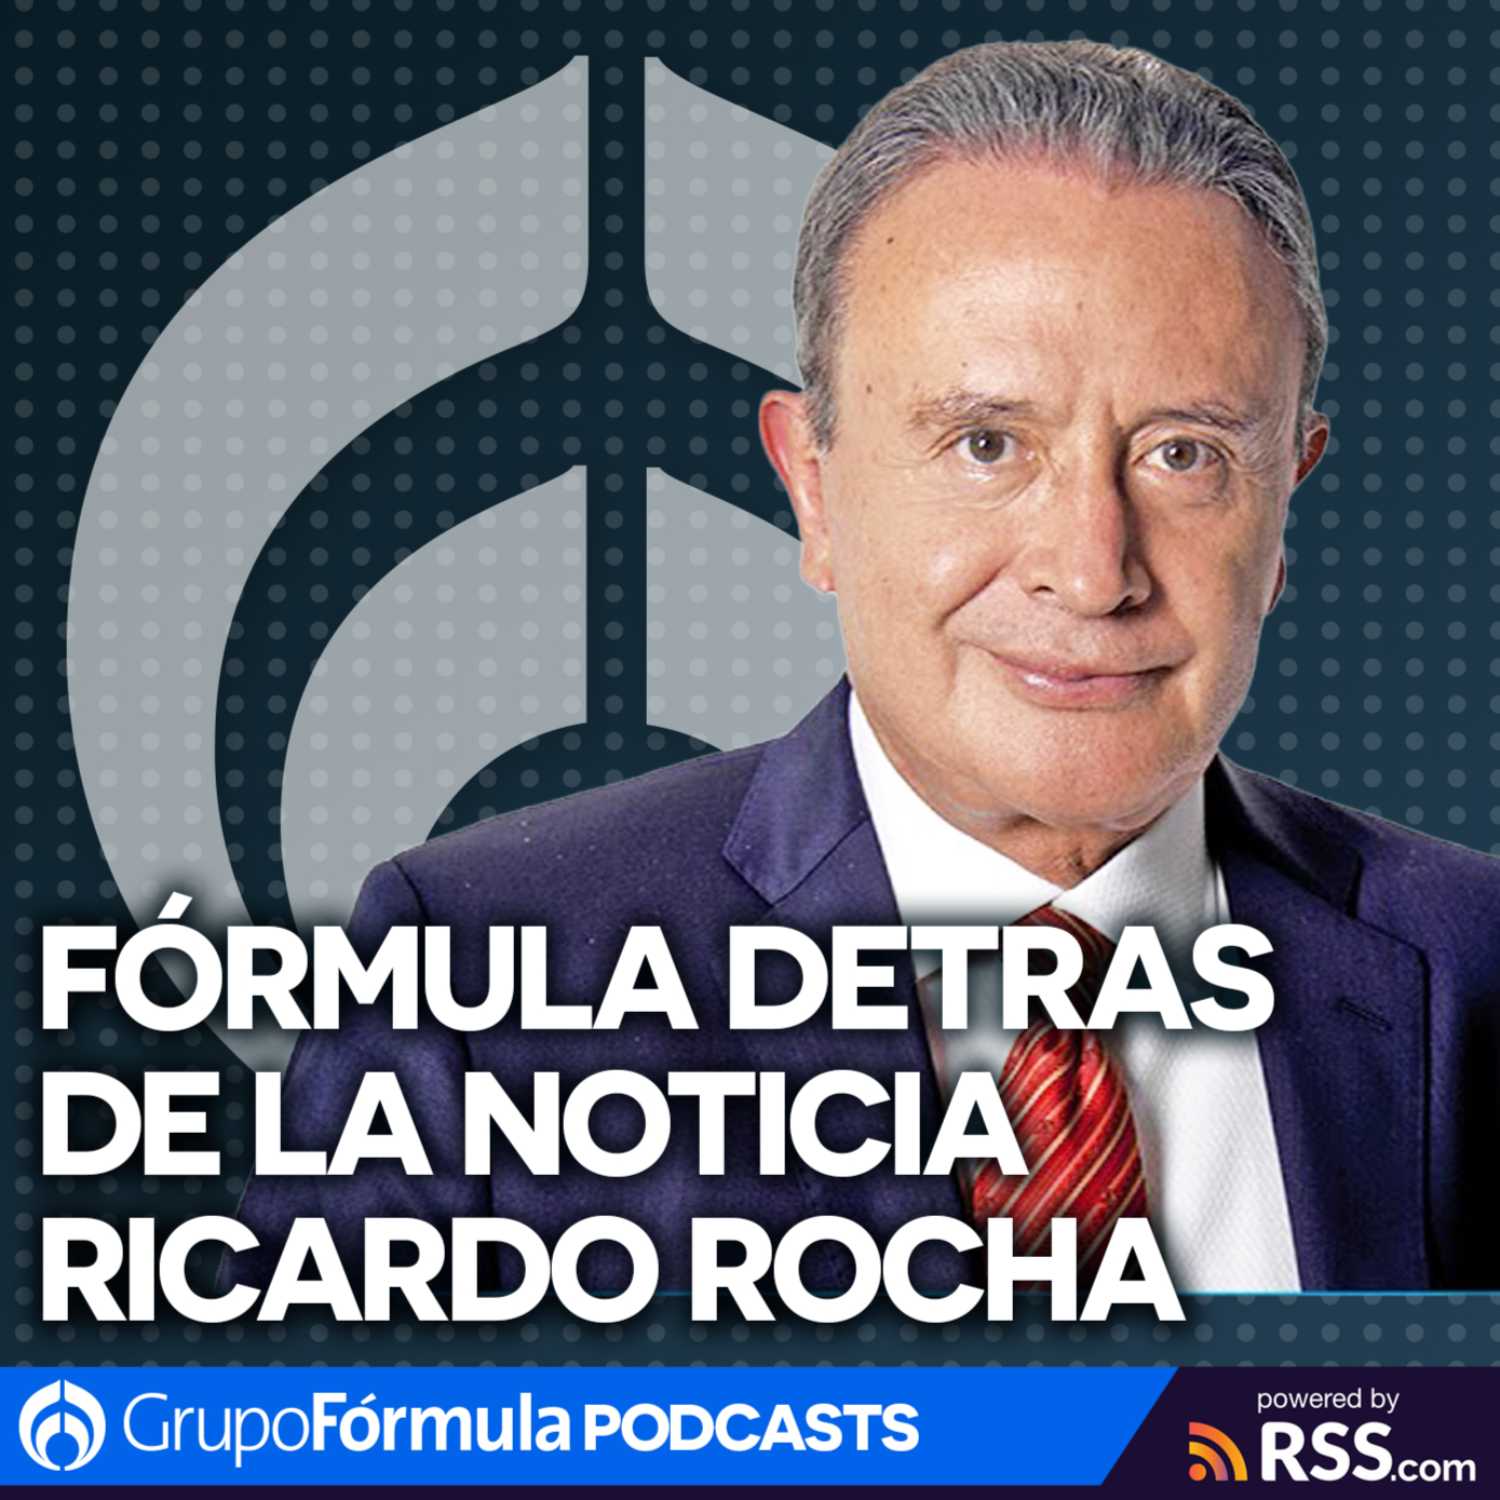 Están Censurando La Radio Y La Televisión Jose Antonio García Fórmula Detrás De La Noticia